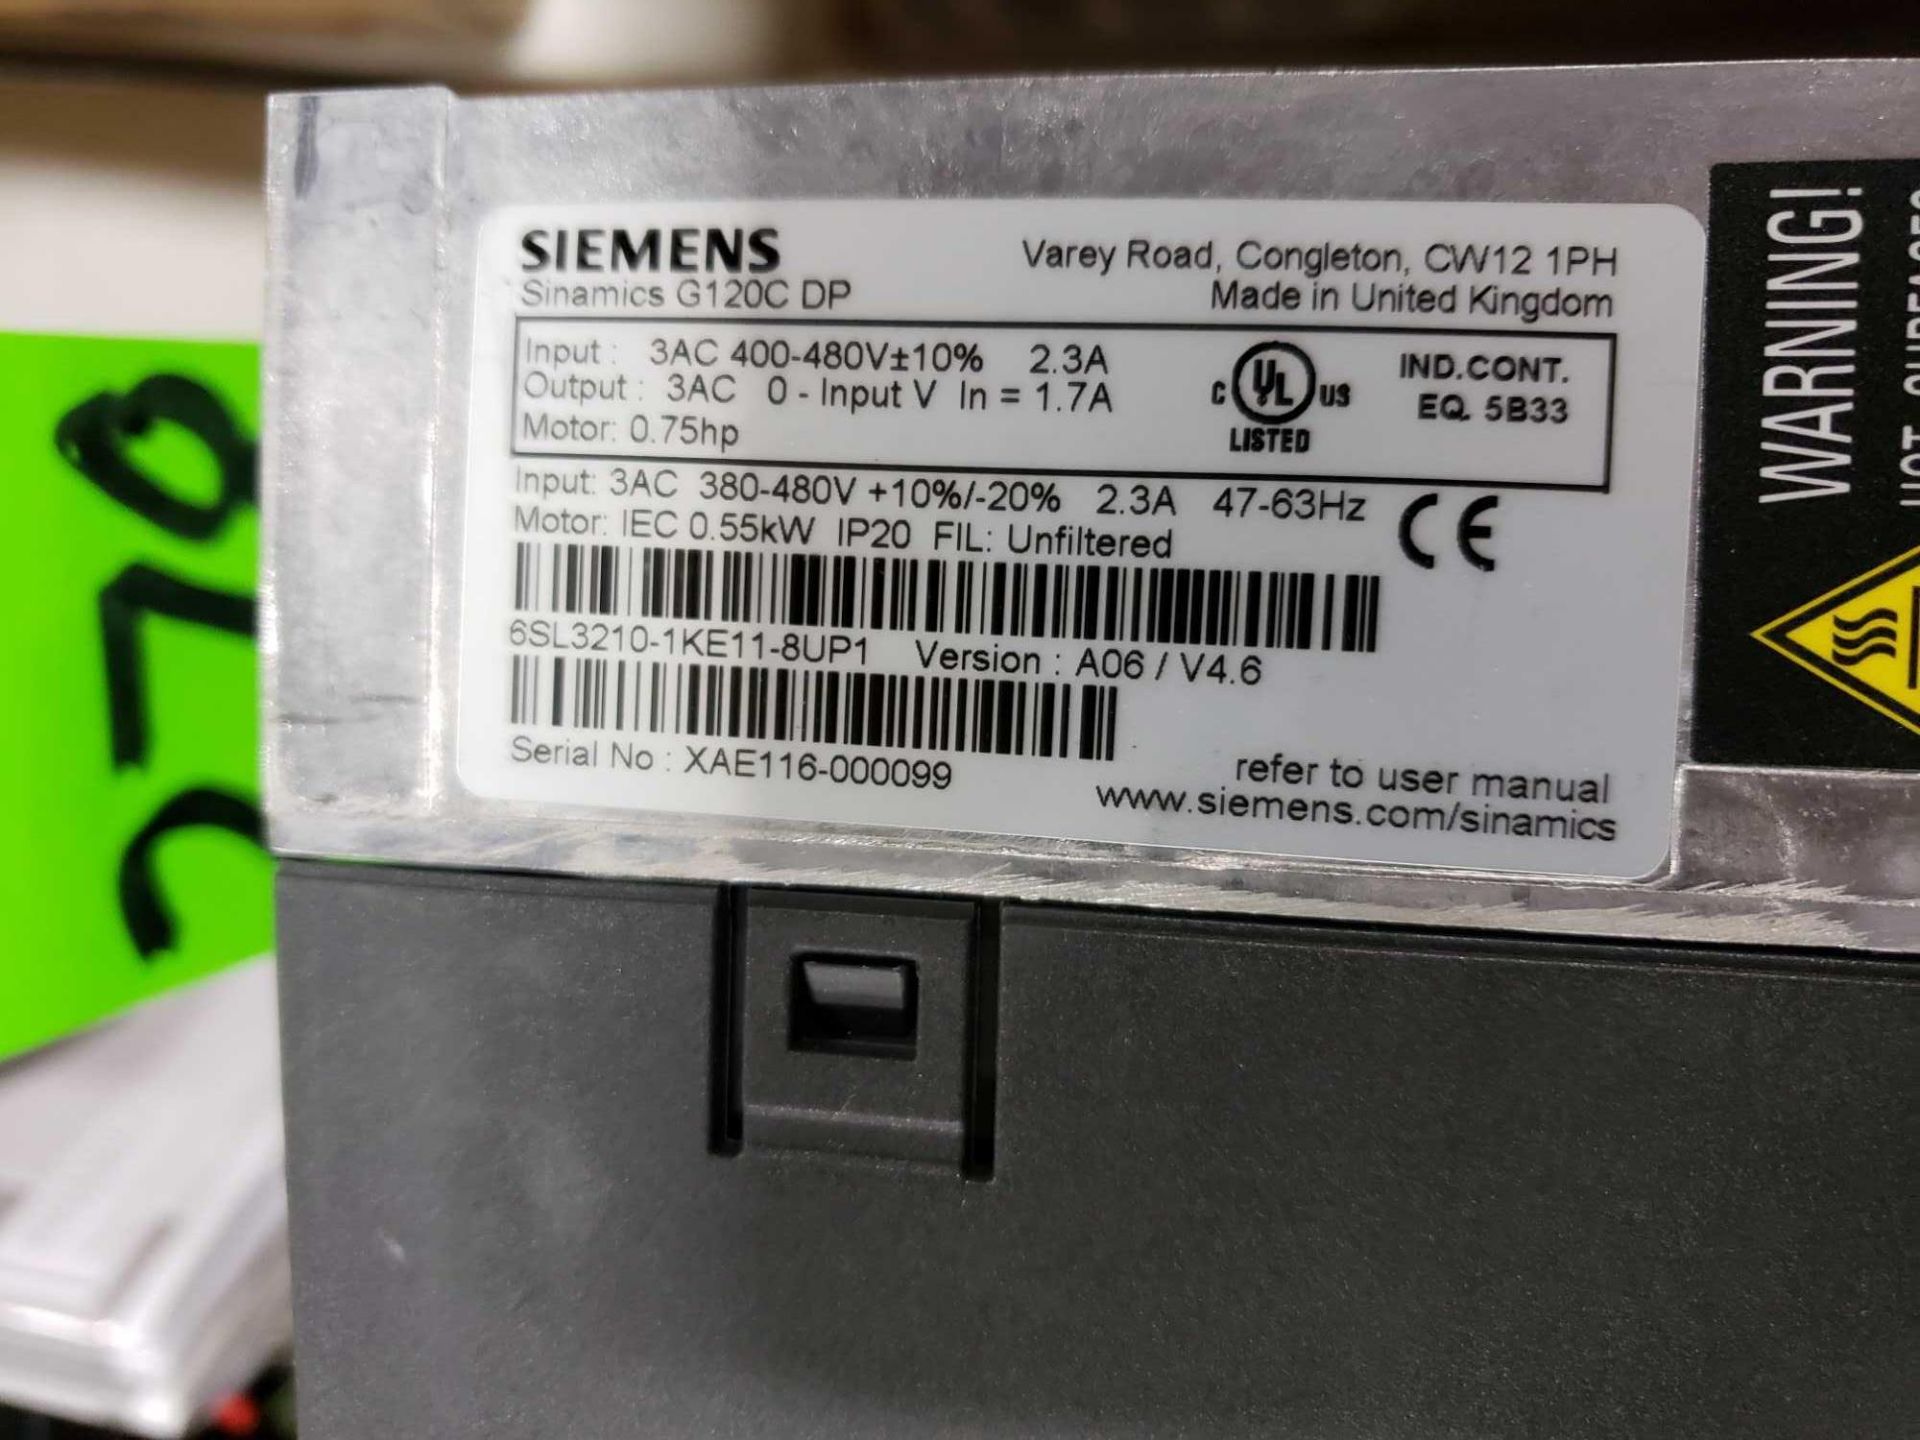 Qty 2 - Siemens Sinamics model 6SL3210-1KE11-8UP1 drive. - Image 2 of 2